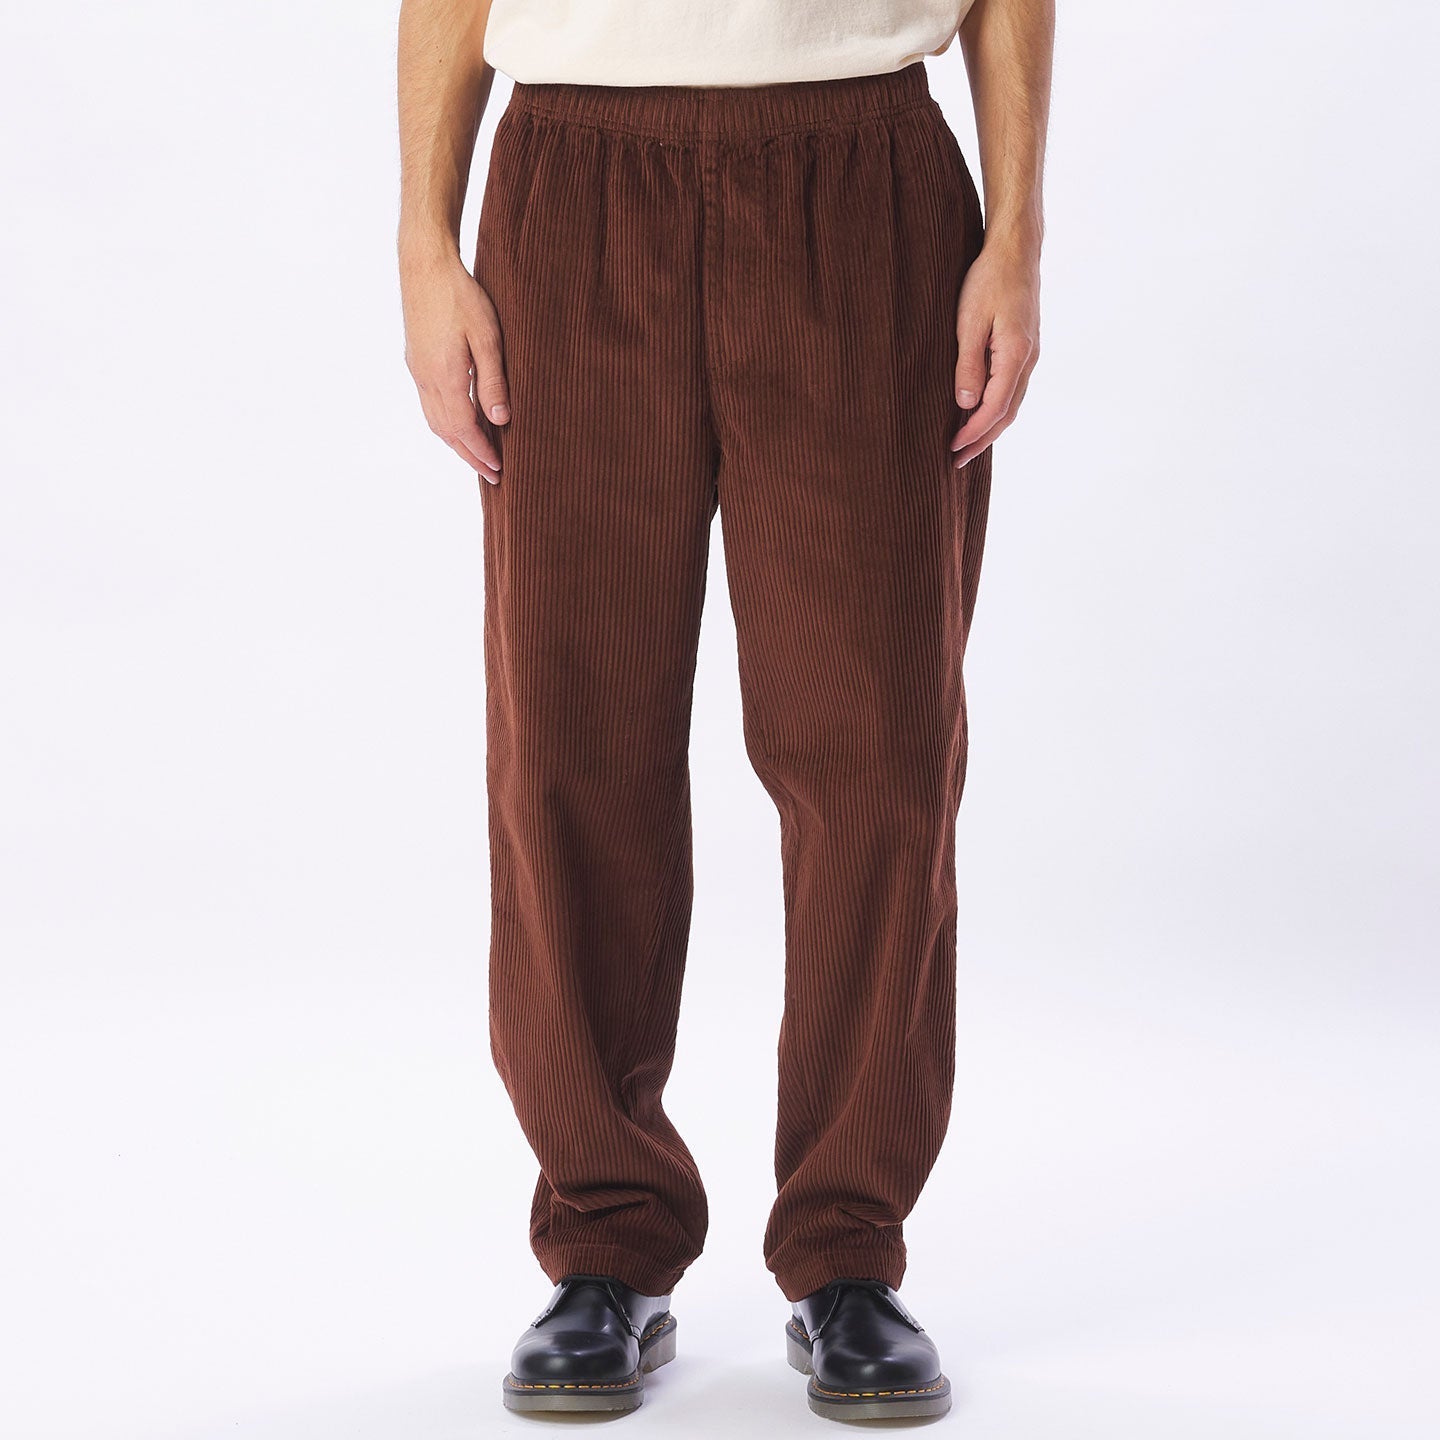 Optimist Pant, Cocoa Brown Men's Corduroy Pants